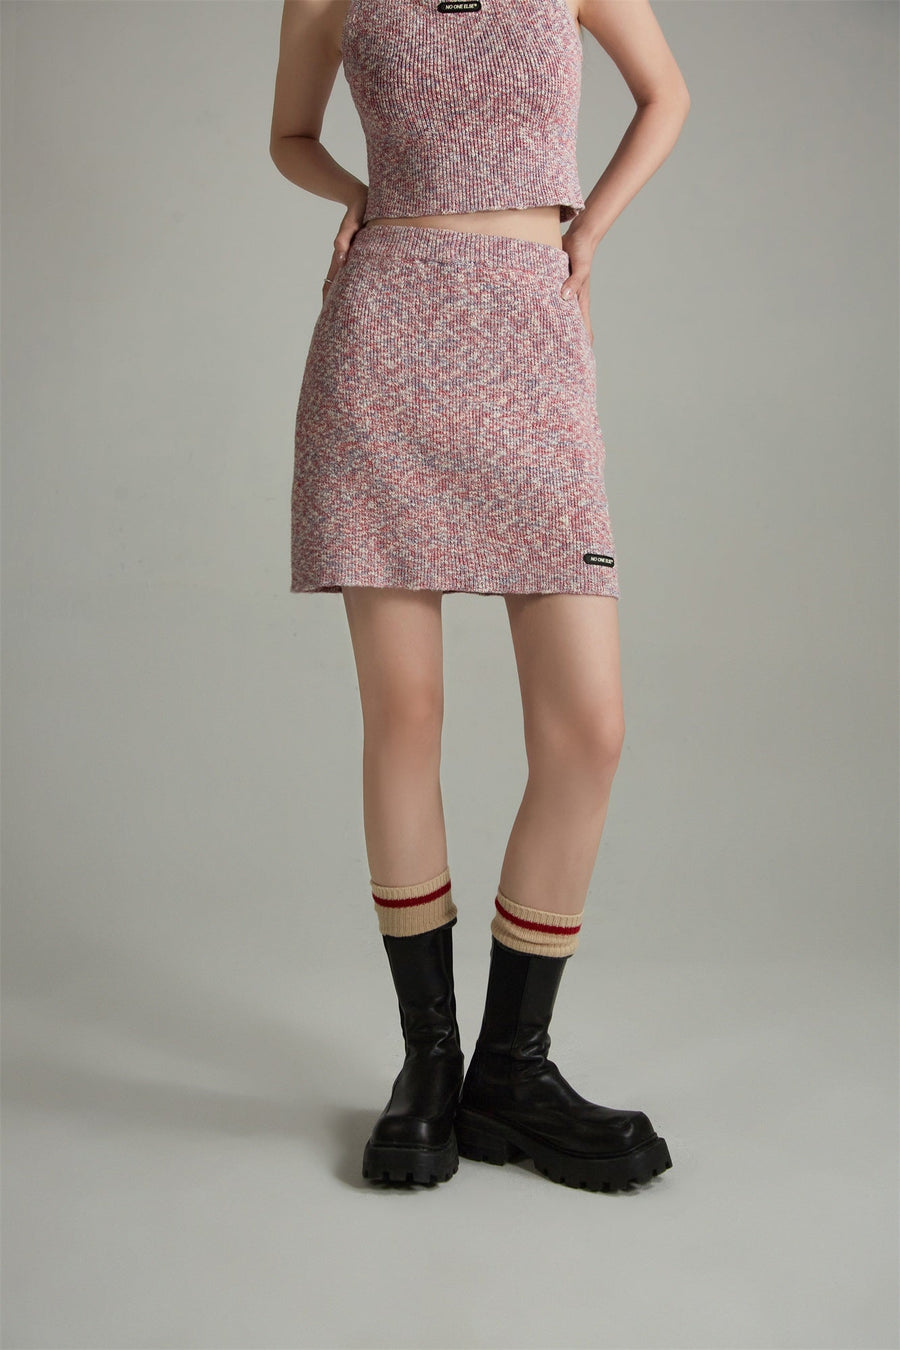 CHUU A-Line Knit Skirt